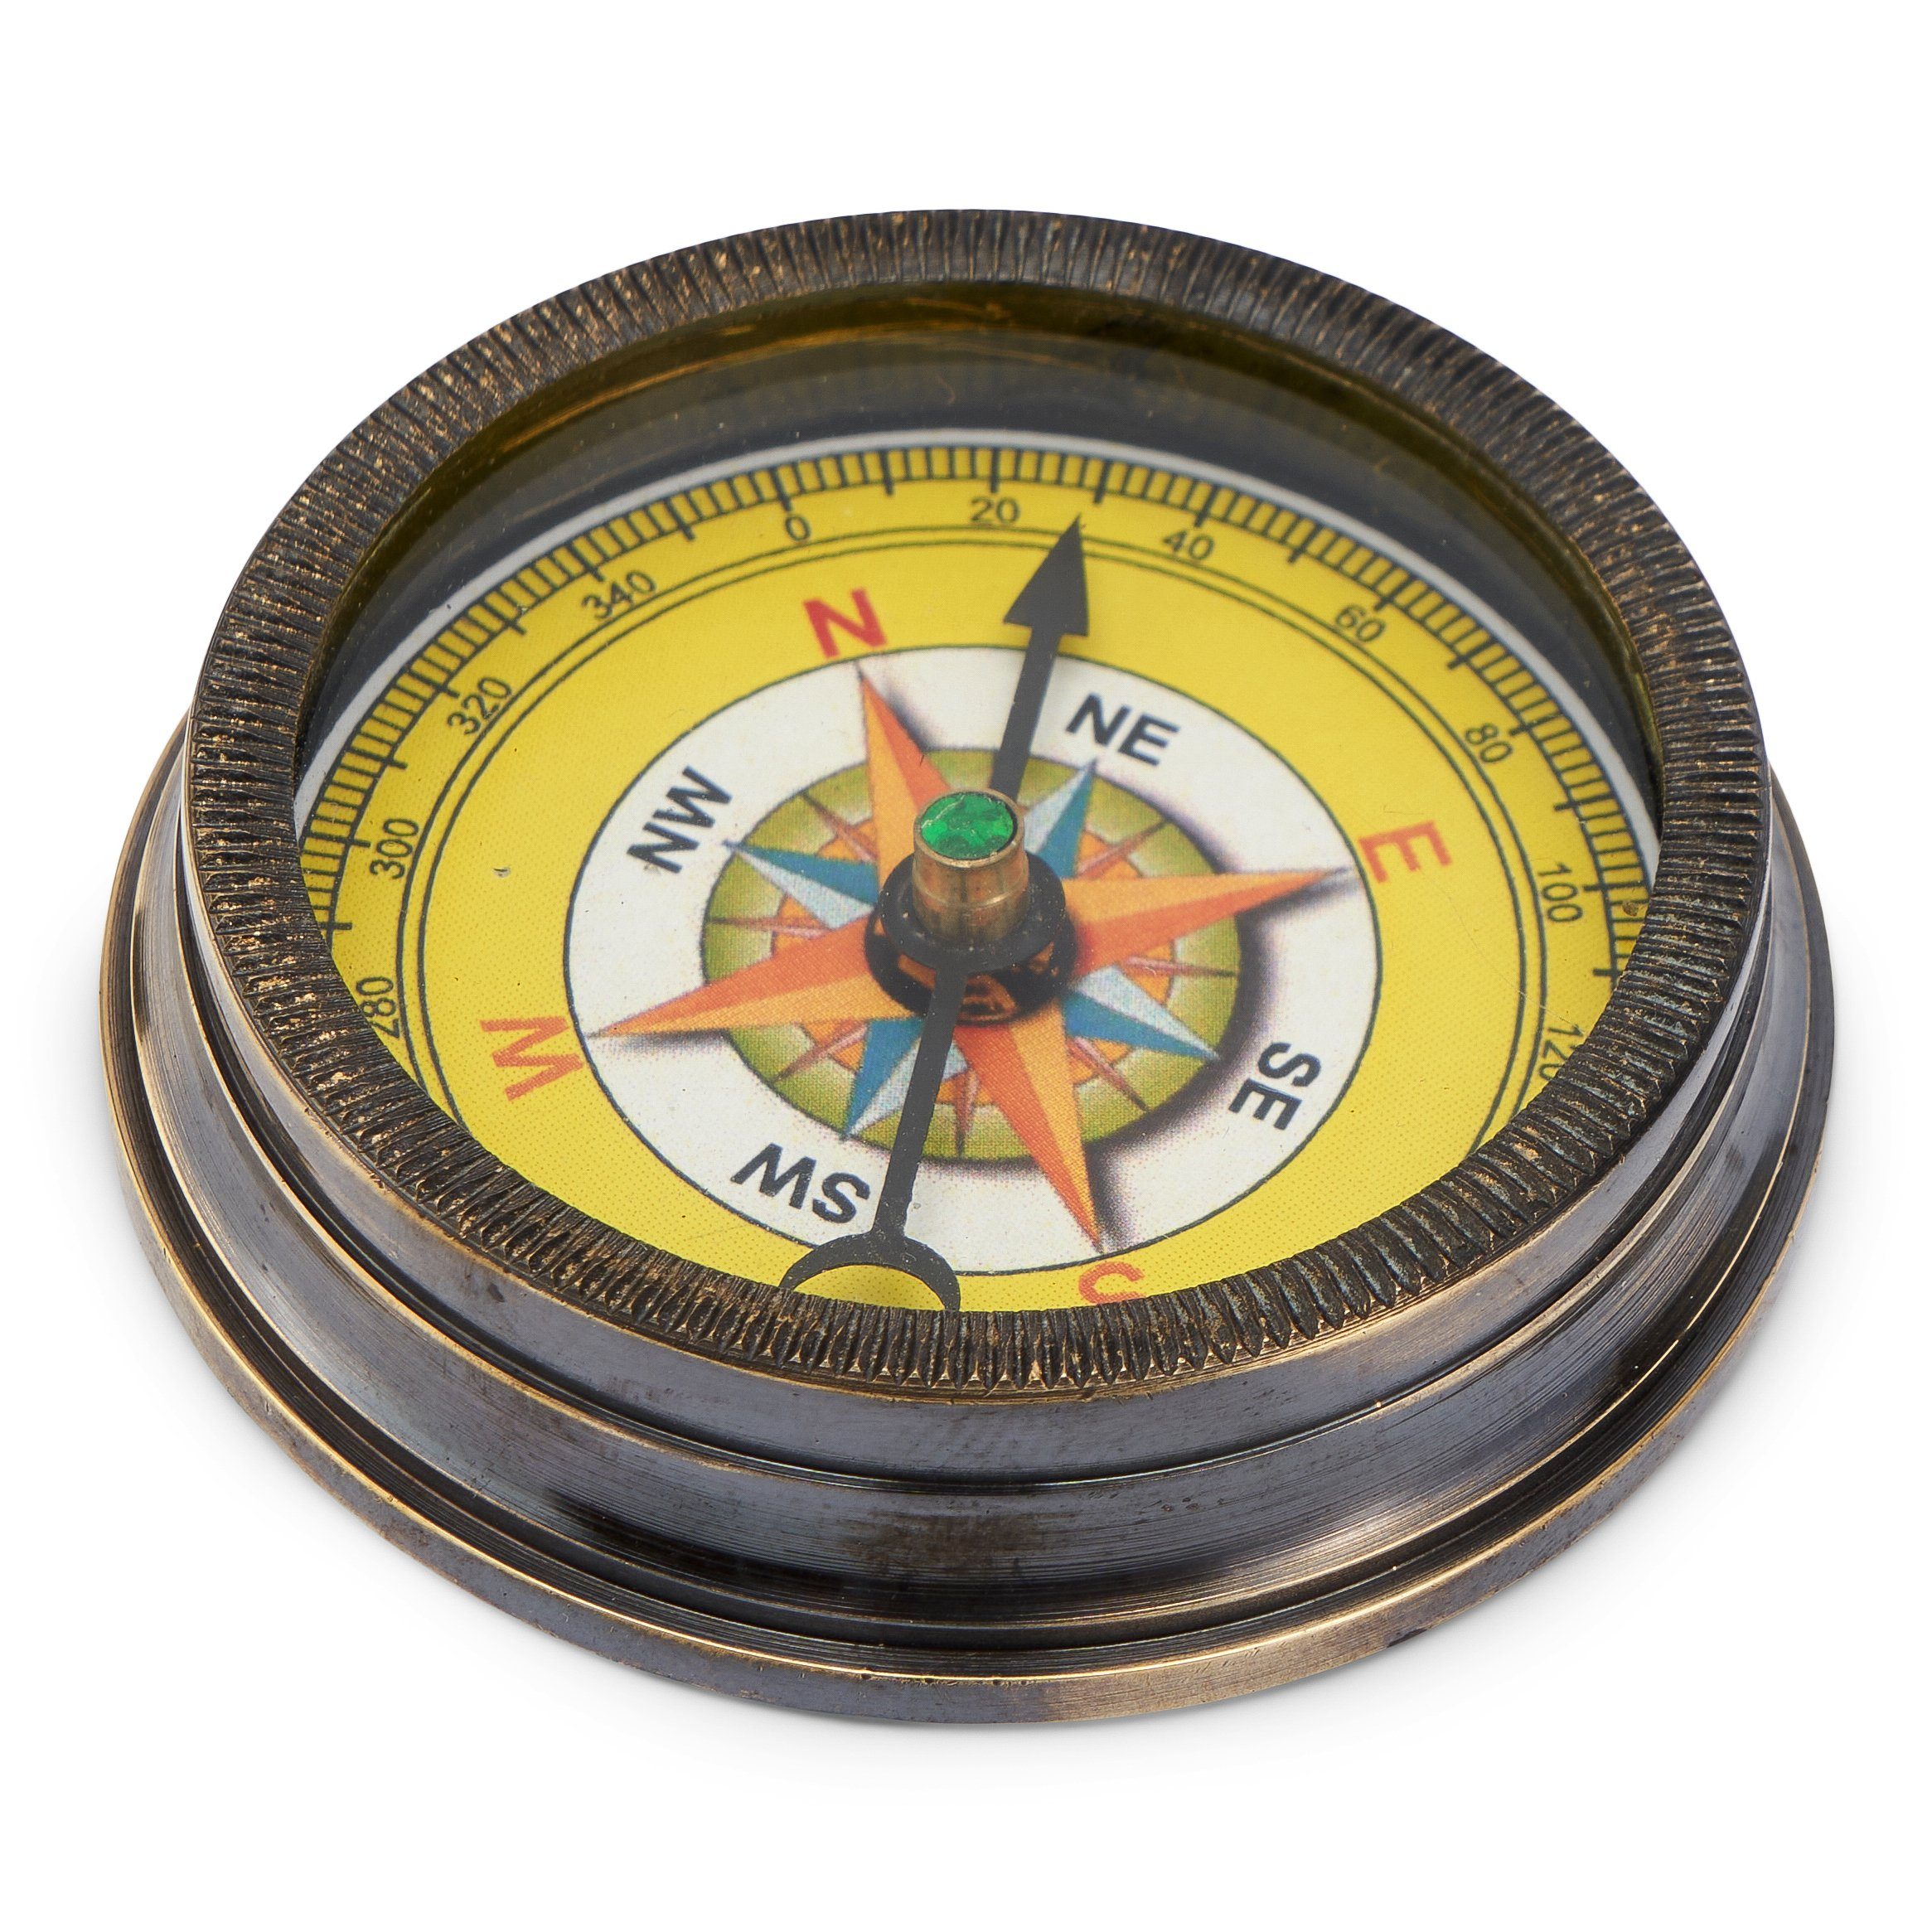 NKlaus Kompass aus Messing (Messing maritimes antik Richtungsan Peilkompass Navigationsgerät 5,5cm antik) Taschenkompass